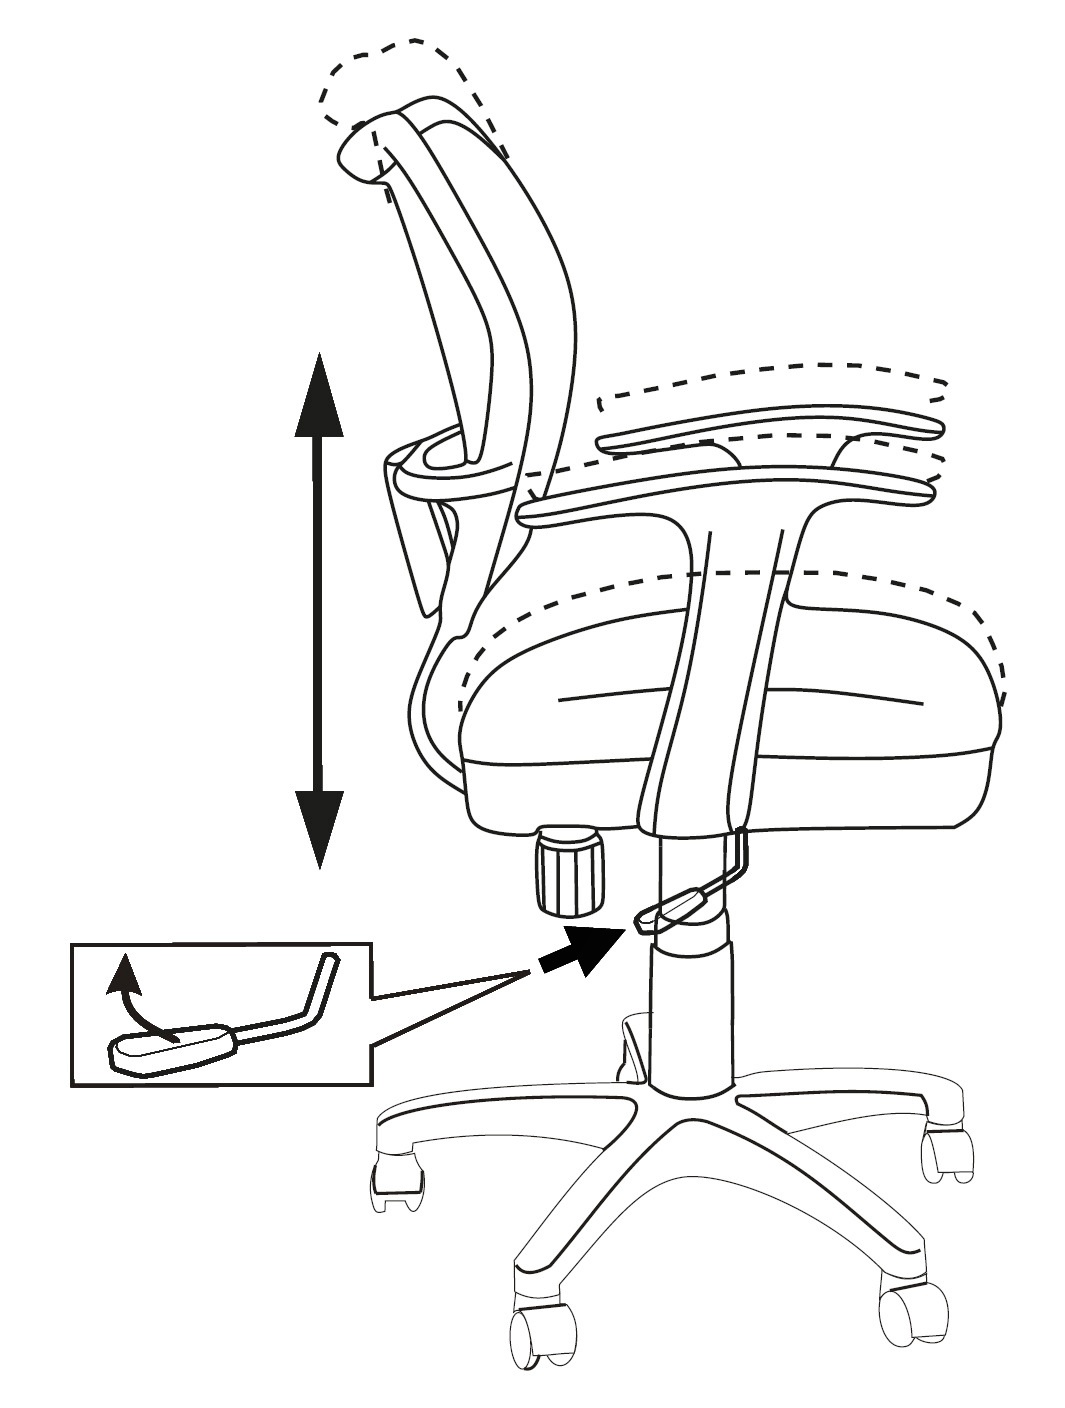 Как правильно отрегулировать седло на велосипеде (регулировка по высоте)